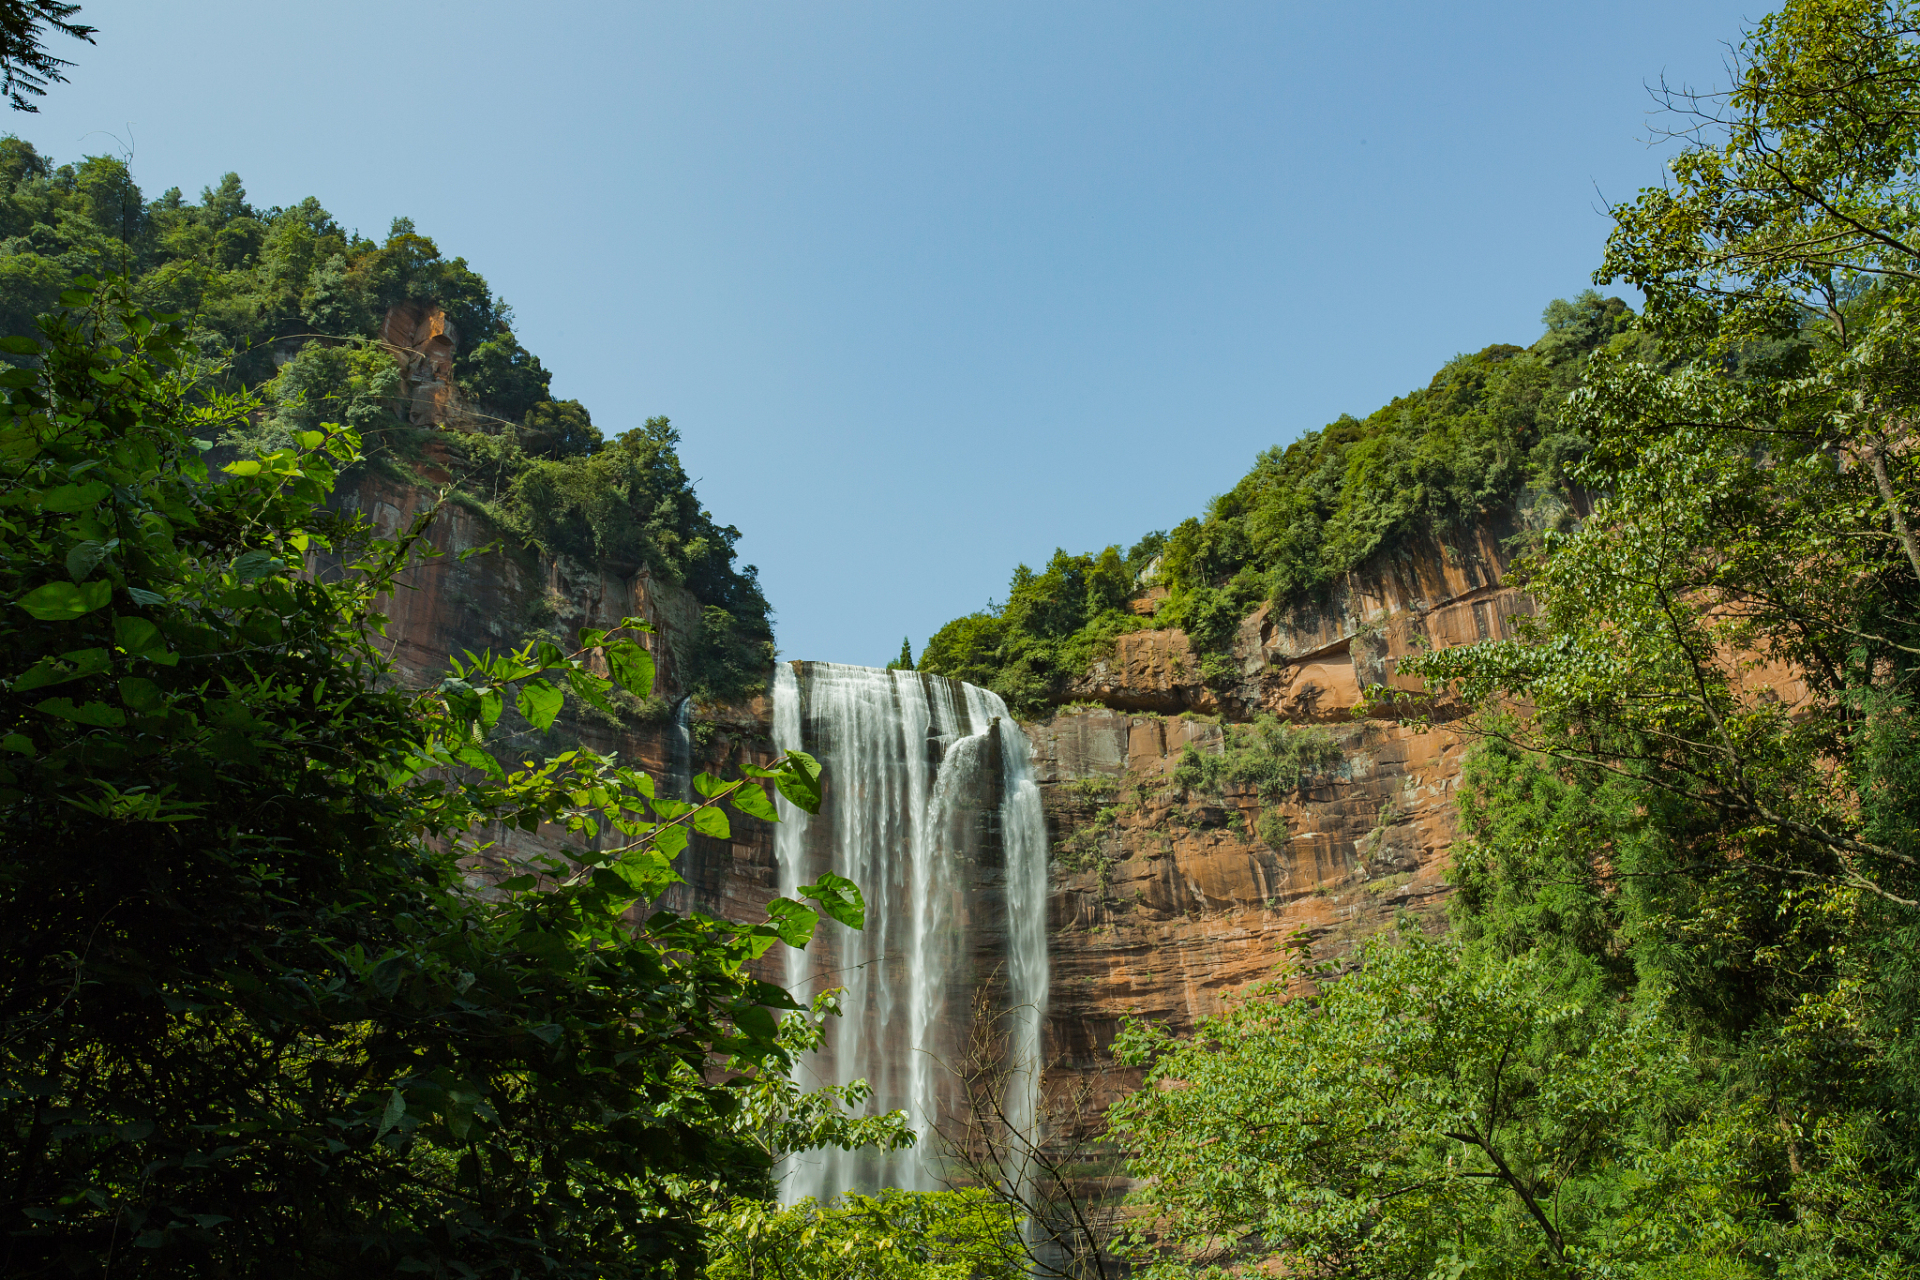 望乡台瀑布在国家级重点风景名胜区四面山,位于重庆市江津区南部,距